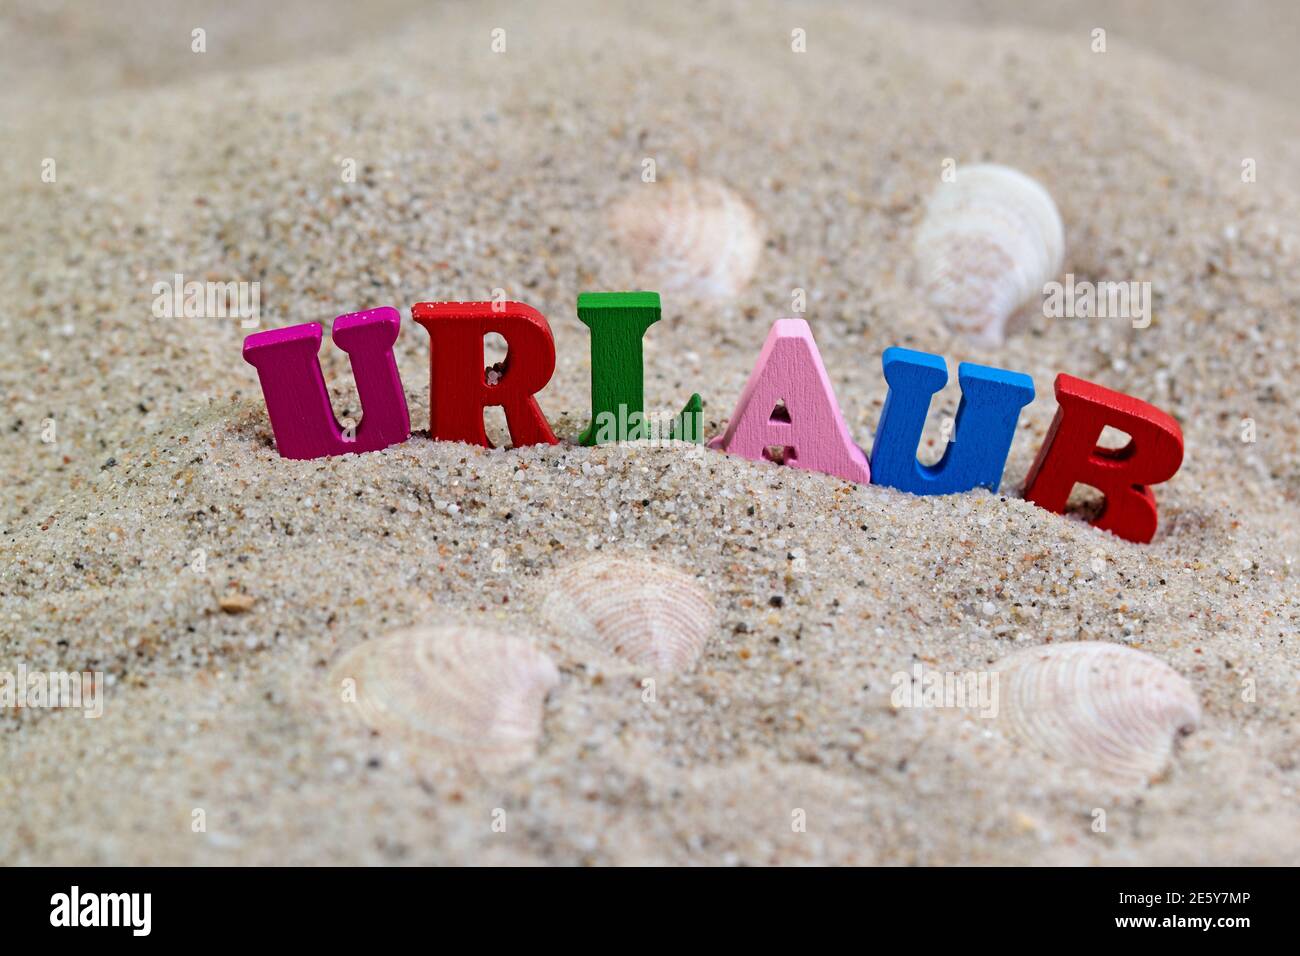 Letras de madera de colores en la arena con el texto 'Urlaub', traducción 'vacaciones' Foto de stock